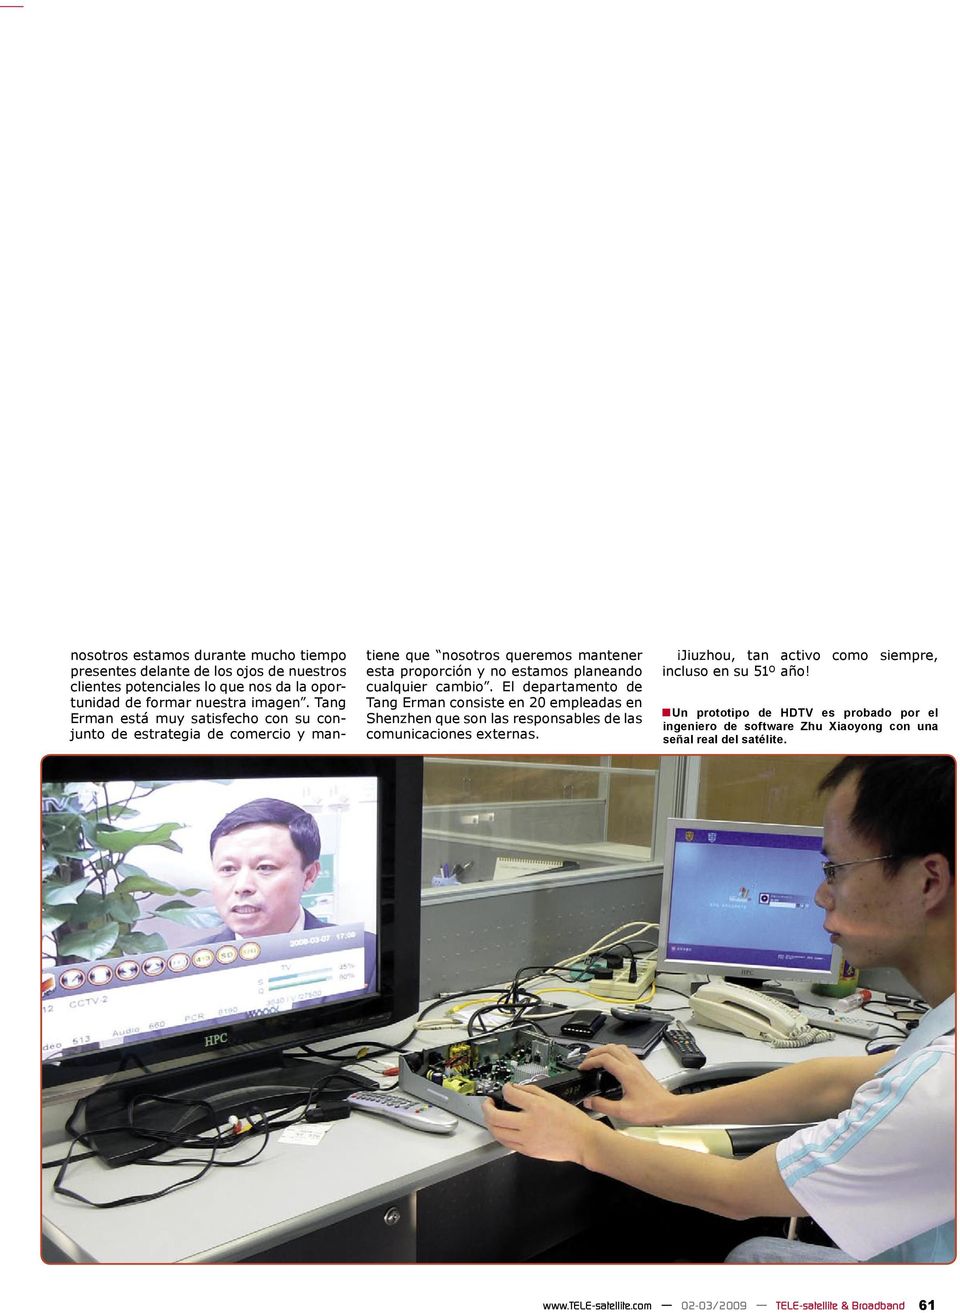 cambio. El departamento de Tang Erman consiste en 20 empleadas en Shenzhen que son las responsables de las comunicaciones externas.